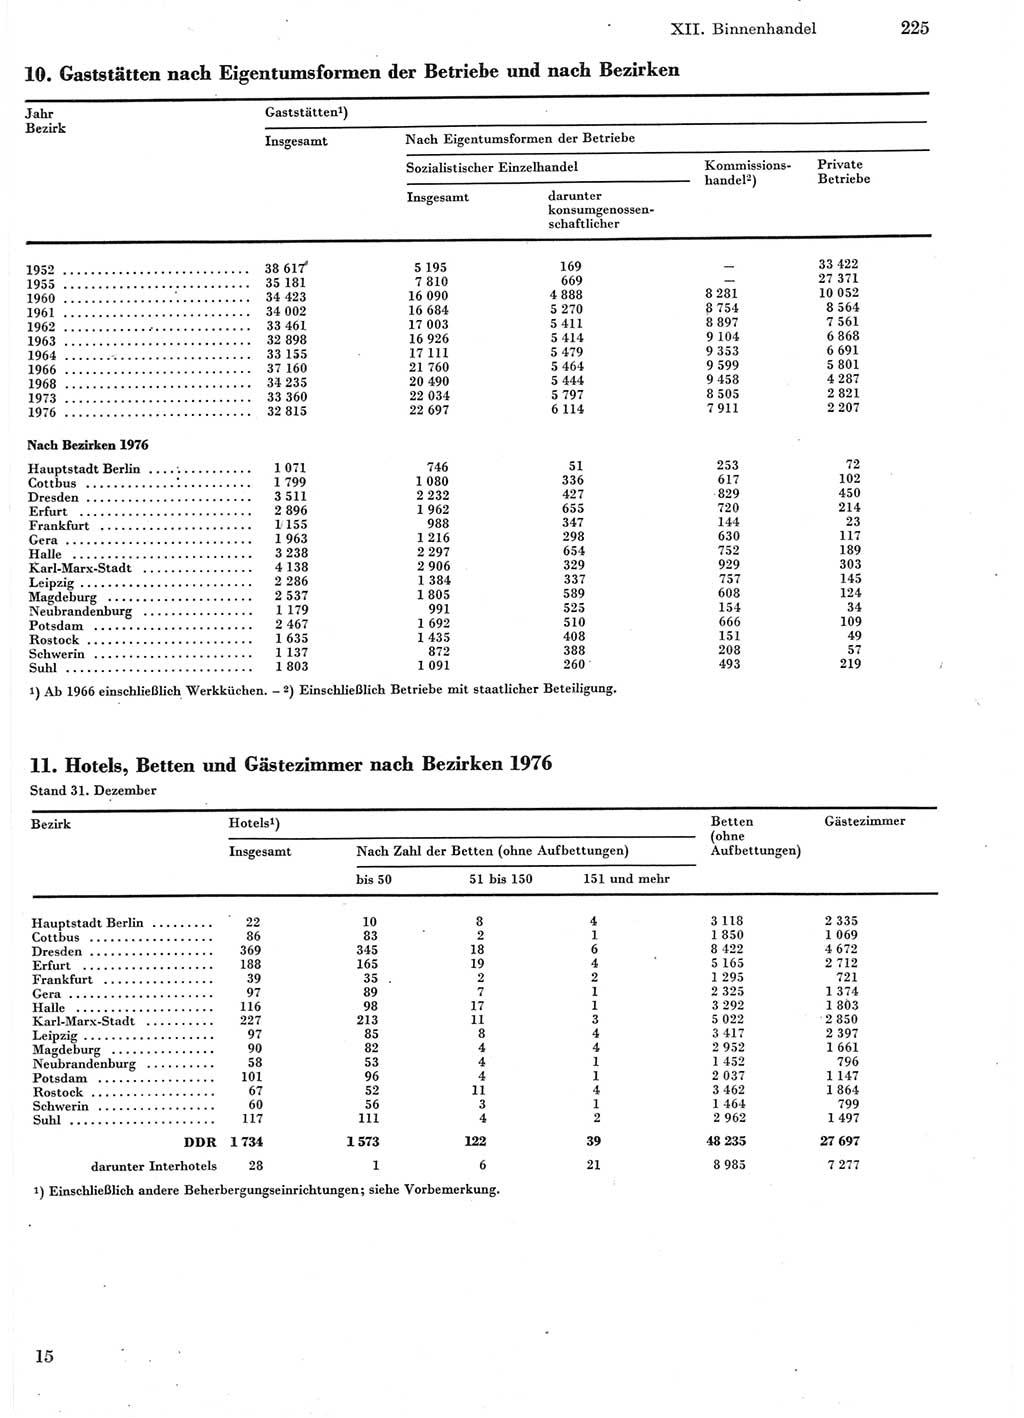 Statistisches Jahrbuch der Deutschen Demokratischen Republik (DDR) 1978, Seite 225 (Stat. Jb. DDR 1978, S. 225)